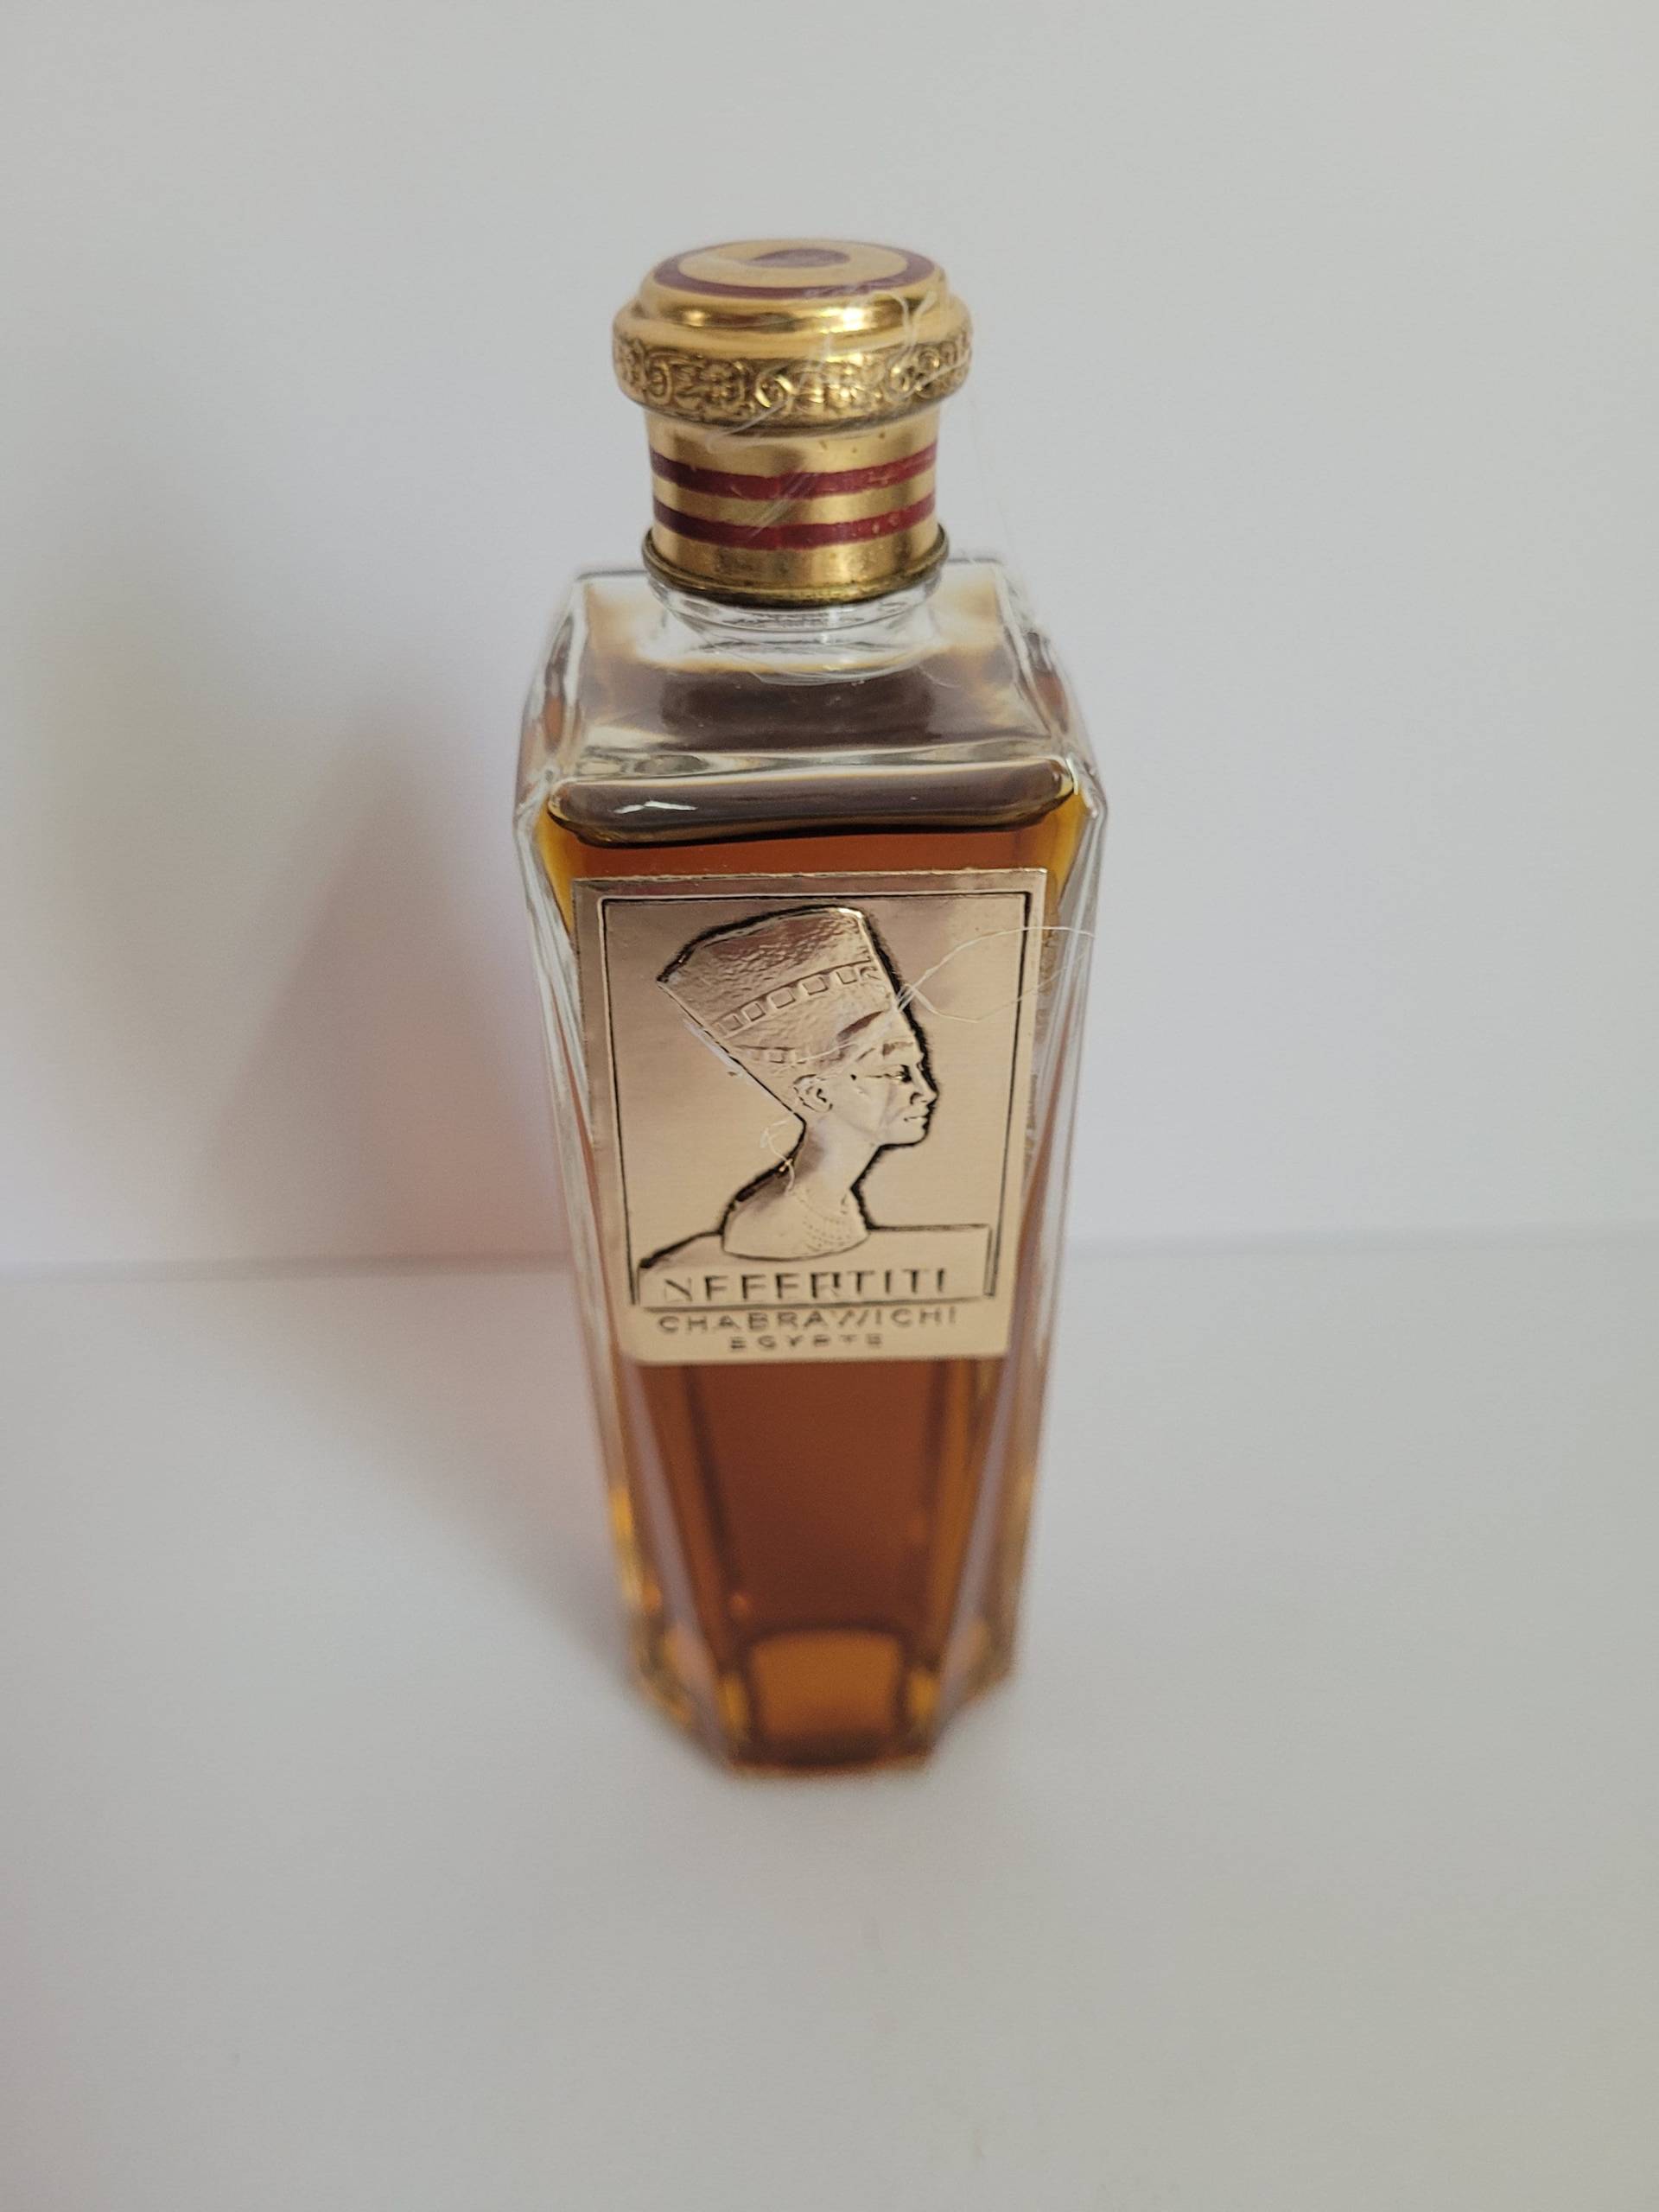 Vintage Duft Nefertiti, Chabrawichi 56Ml, Eau De Parfum. Very Selten, Diskontinuierlich von Listyle